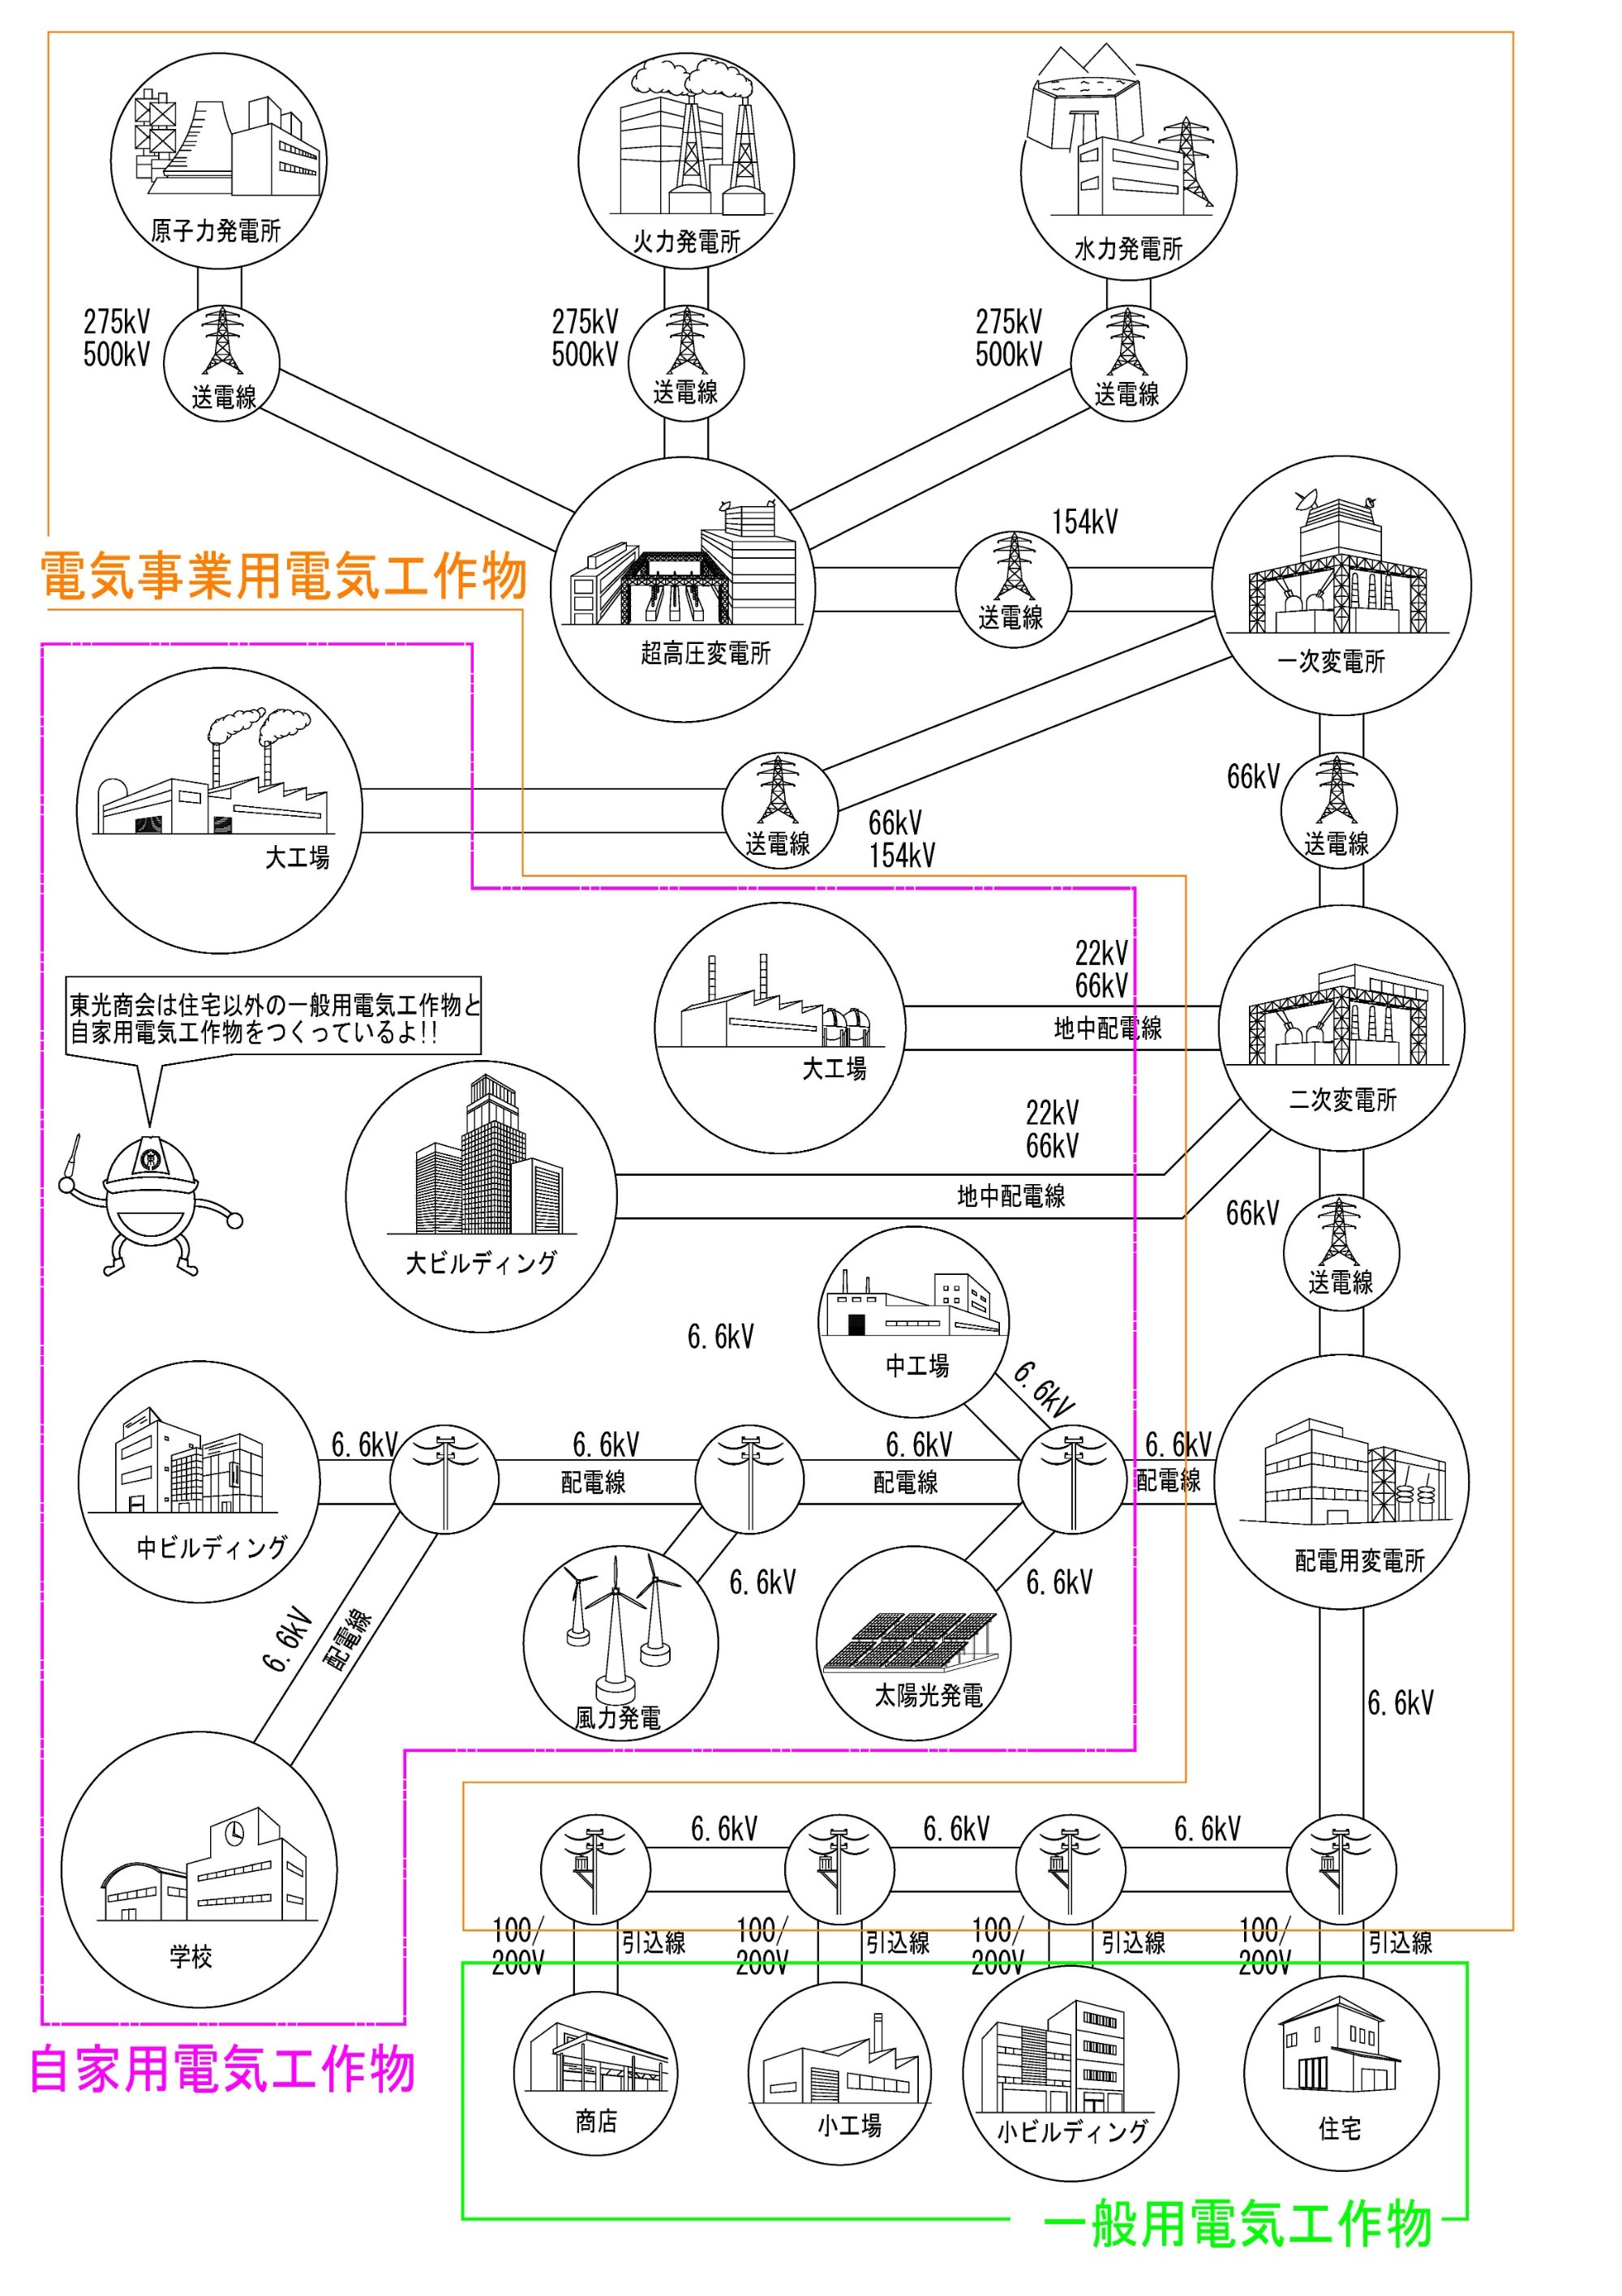 電設業界へようこそ 一般社団法人 日本電設工業協会